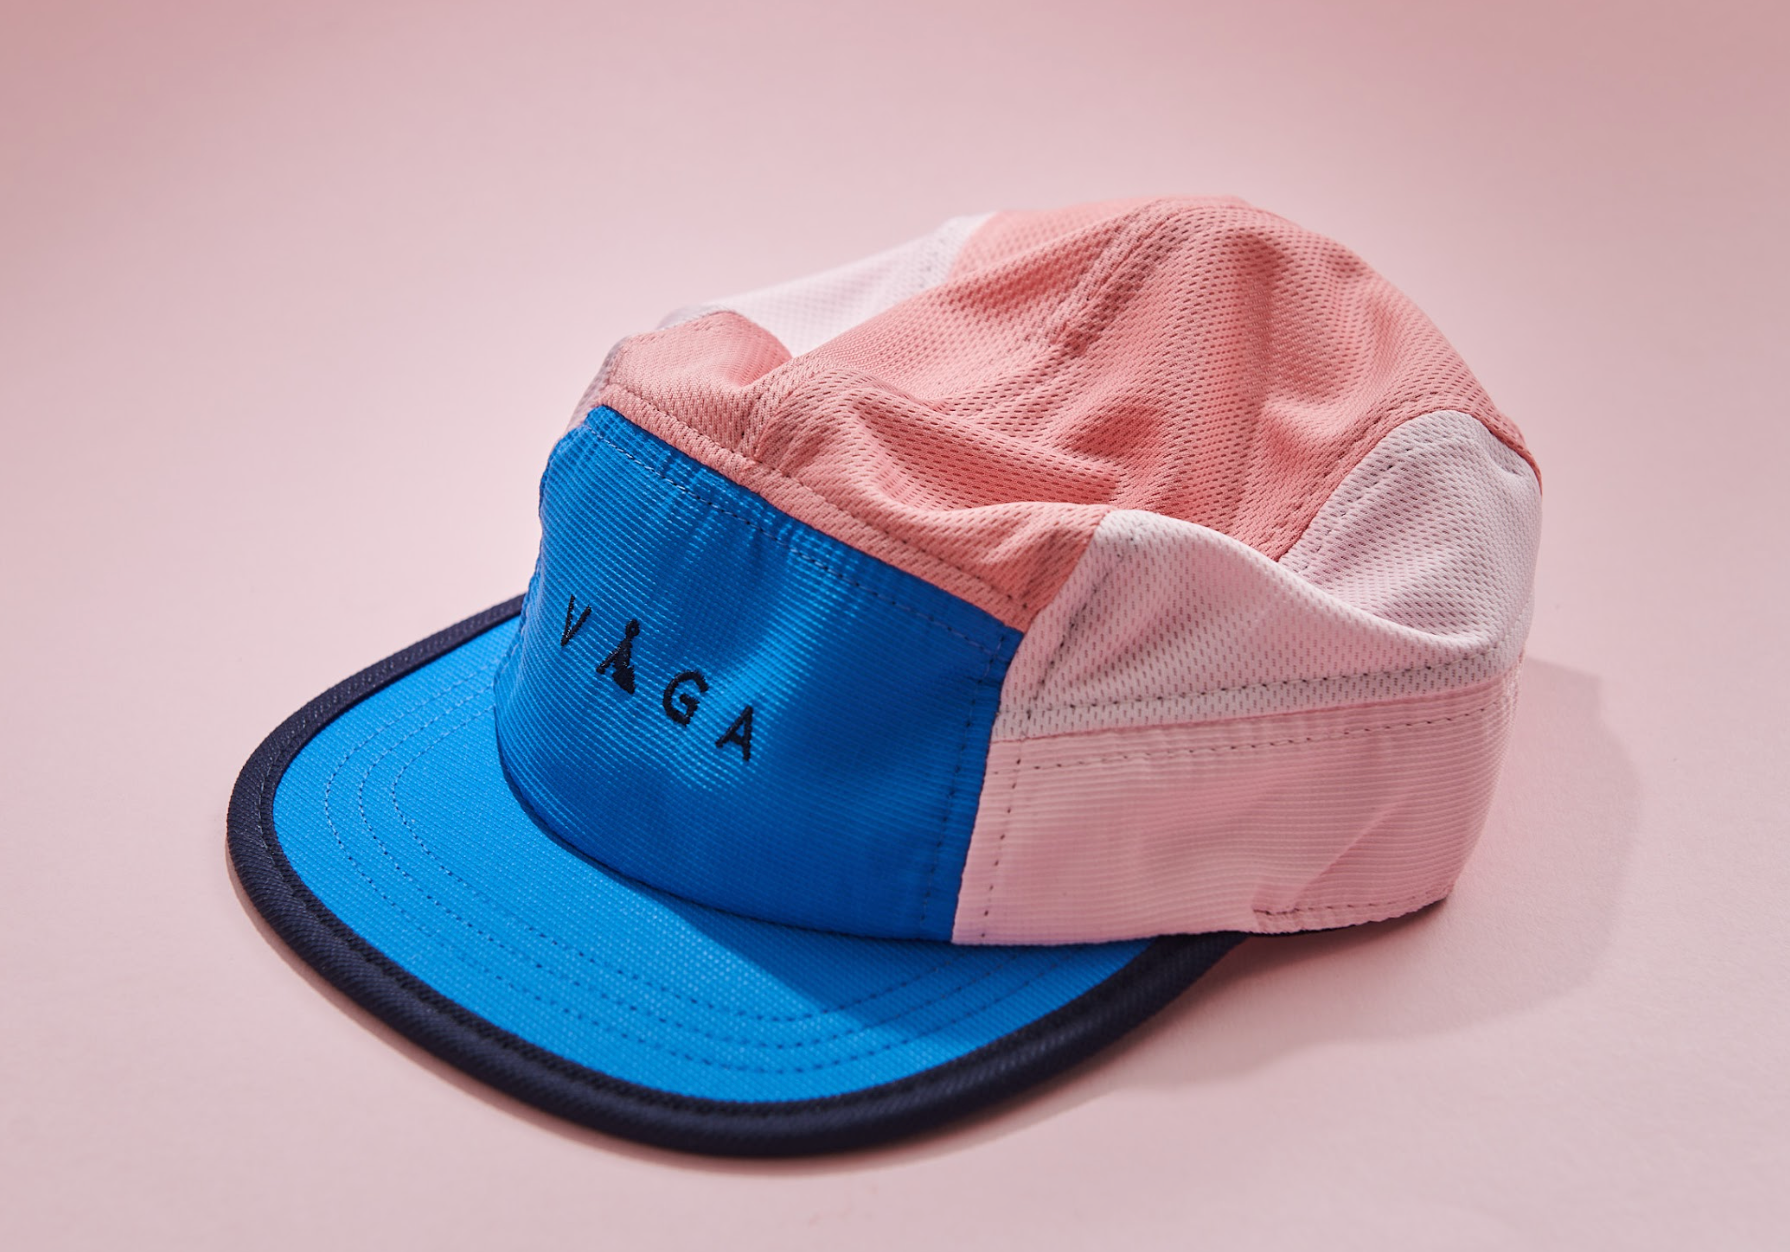 Vaga Club Cap - Pastel Pink/ Pink/ Navy Blue